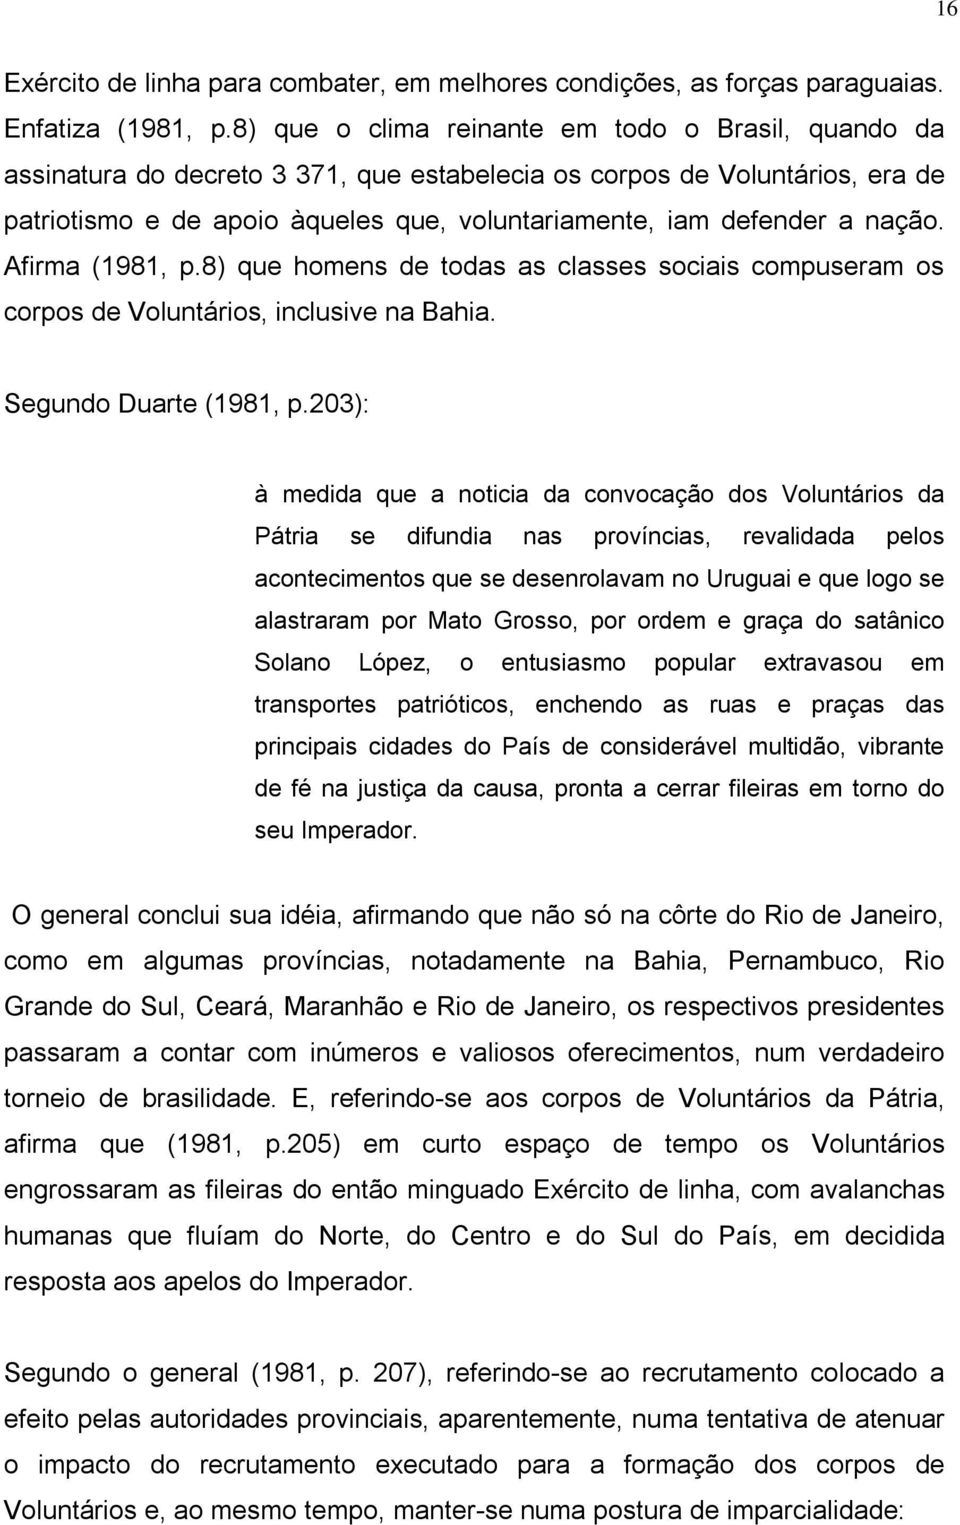 nação. Afirma (1981, p.8) que homens de todas as classes sociais compuseram os corpos de Voluntários, inclusive na Bahia. Segundo Duarte (1981, p.